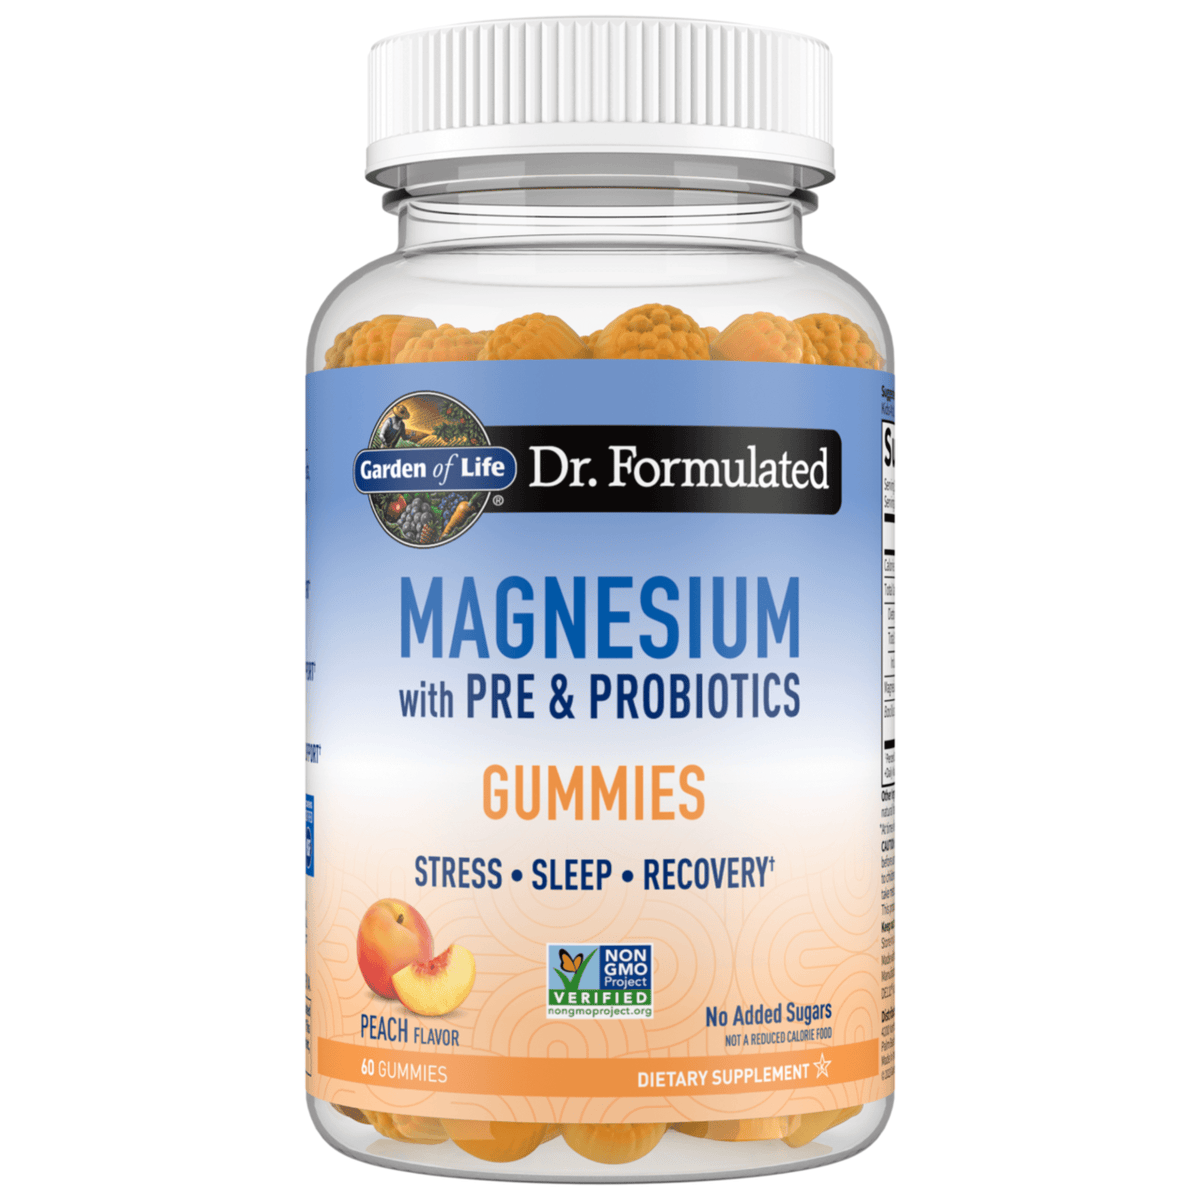 Primary Image of Magnesium Gummies Peach